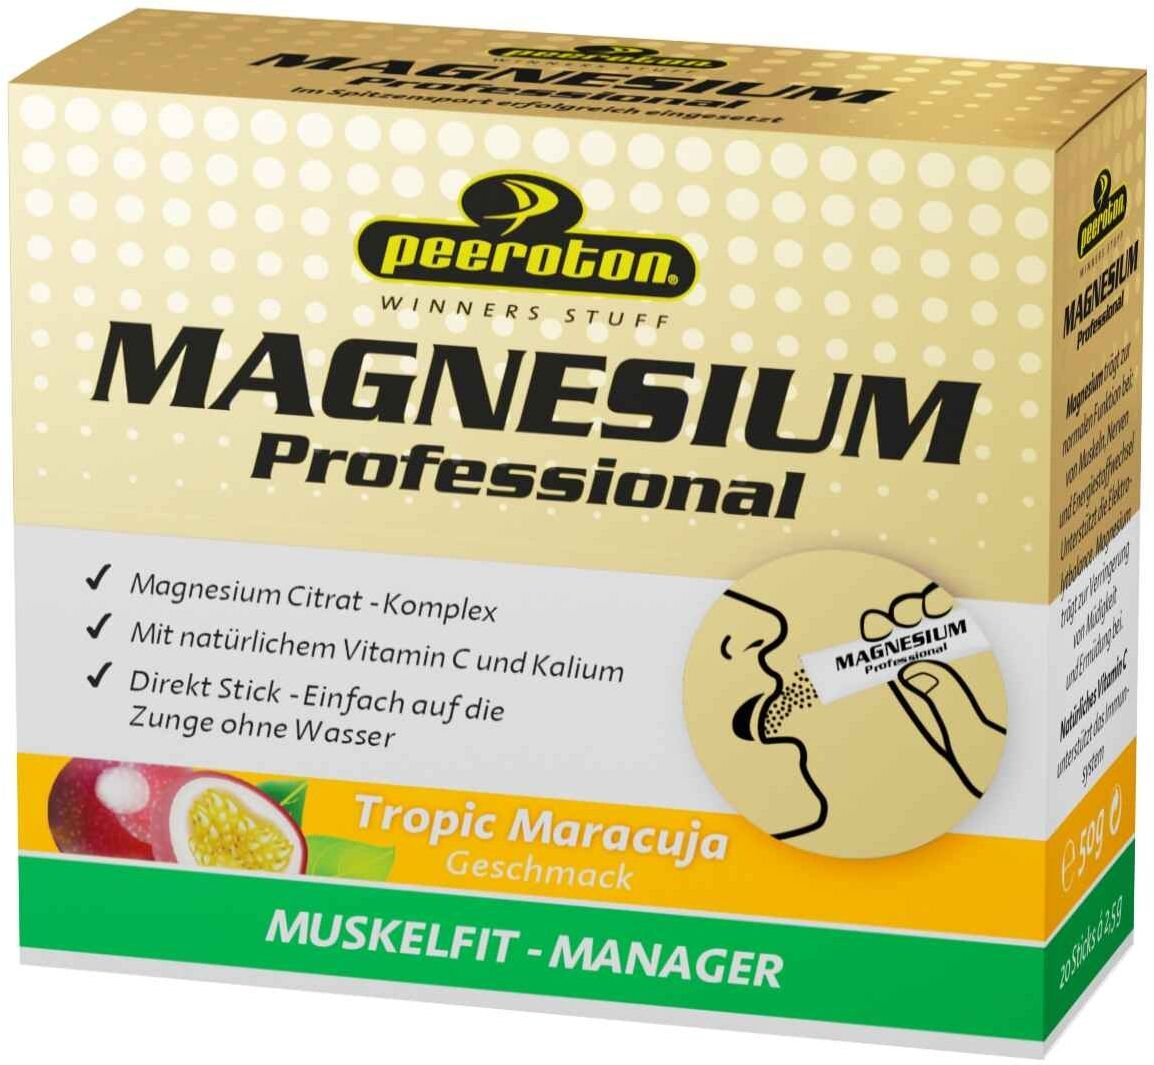 Peeroton MAGNESIUM Professional 20x2.5g tropic 2